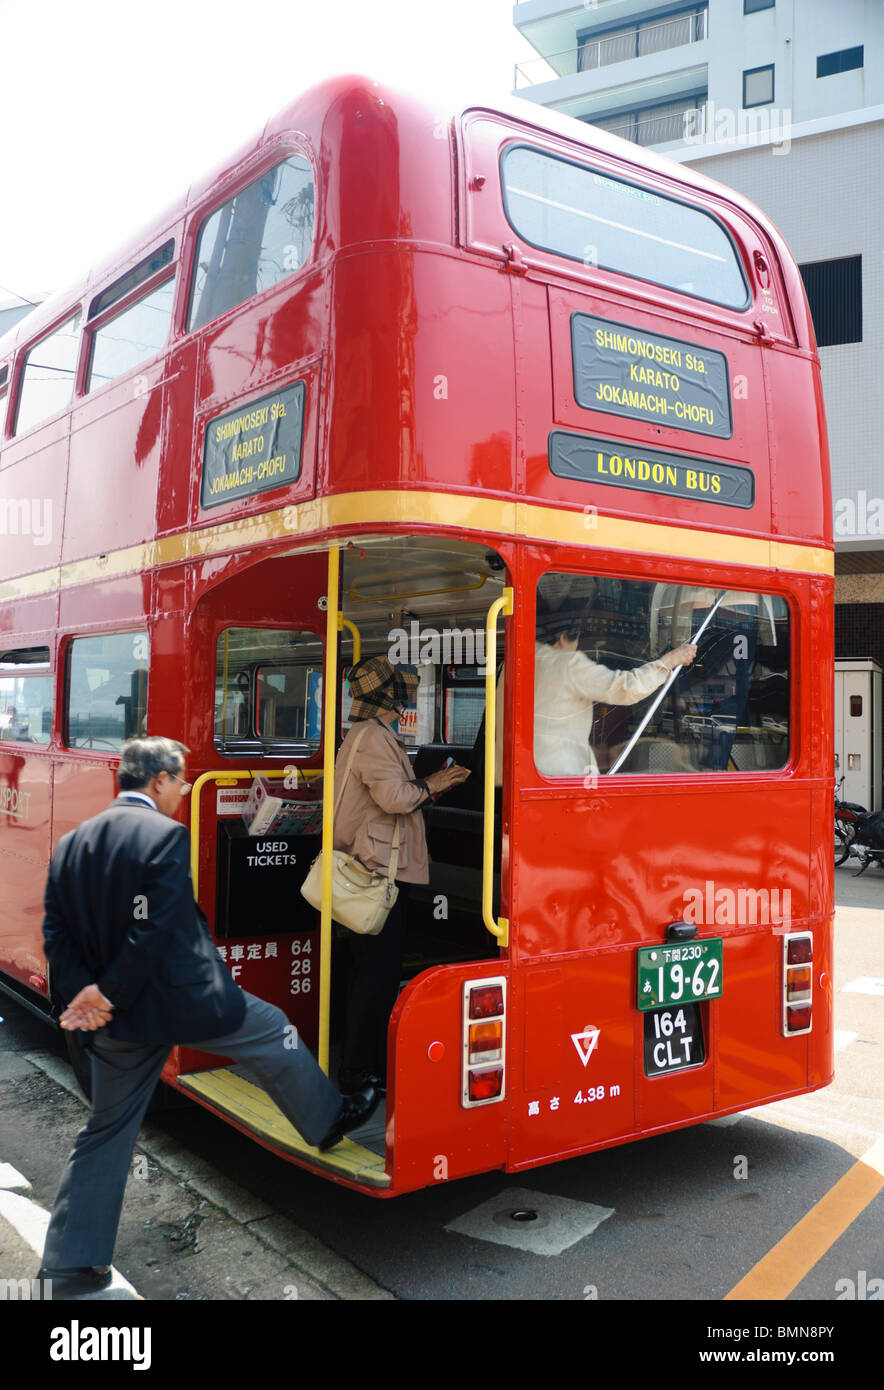 Red London bus con i turisti giapponesi; imbarco passeggeri attraverso l'ingresso posteriore; Routemaster double decker bus. Fai clic per i dettagli. Foto Stock